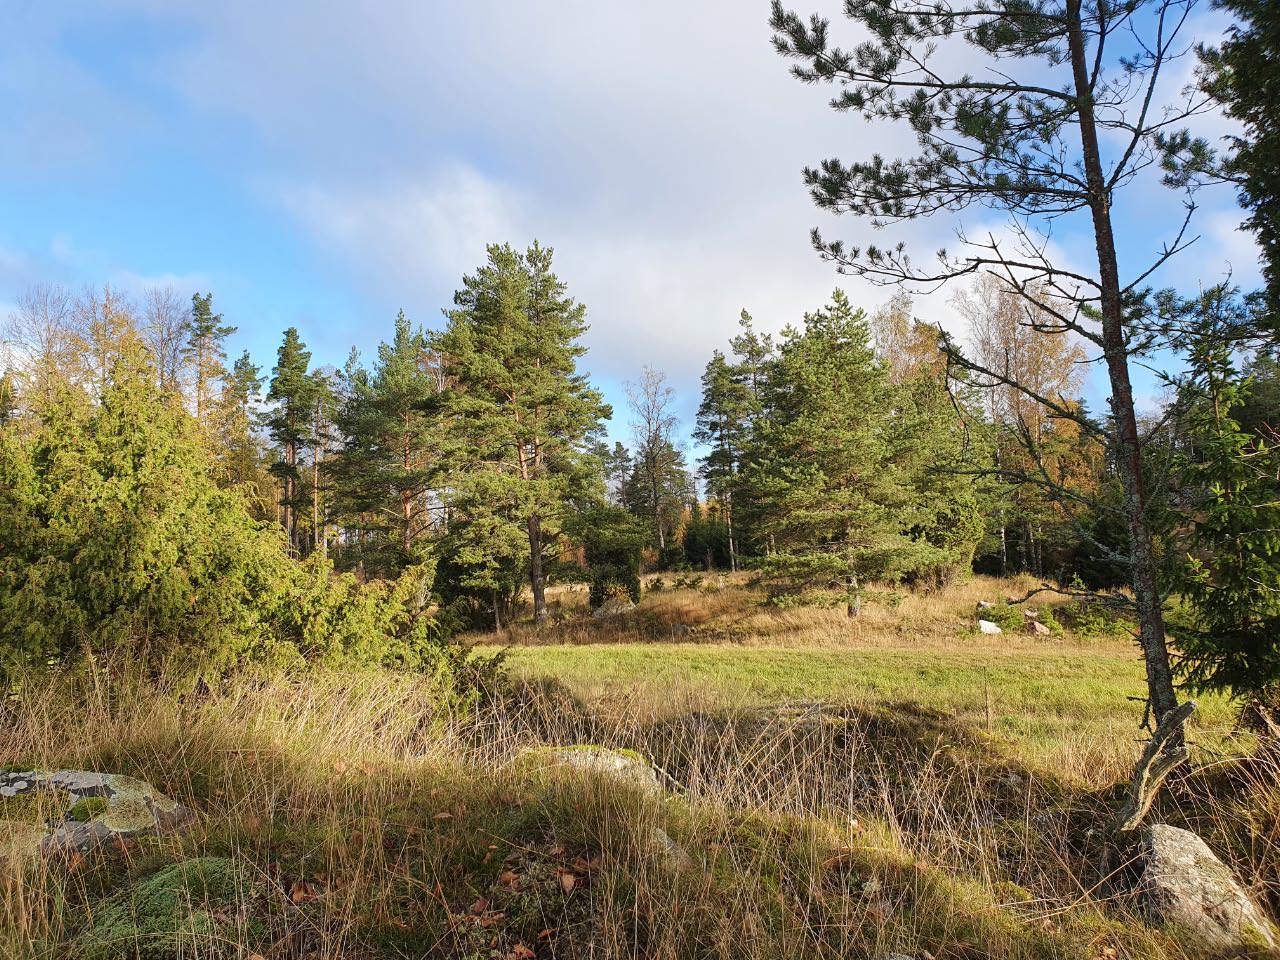 Kuva: Näkymä Inkoon Norrbyn kylätonttialueelle. Kuvattu pohjoisesta. Sari Mäntylä-Asplund 14.10.2020